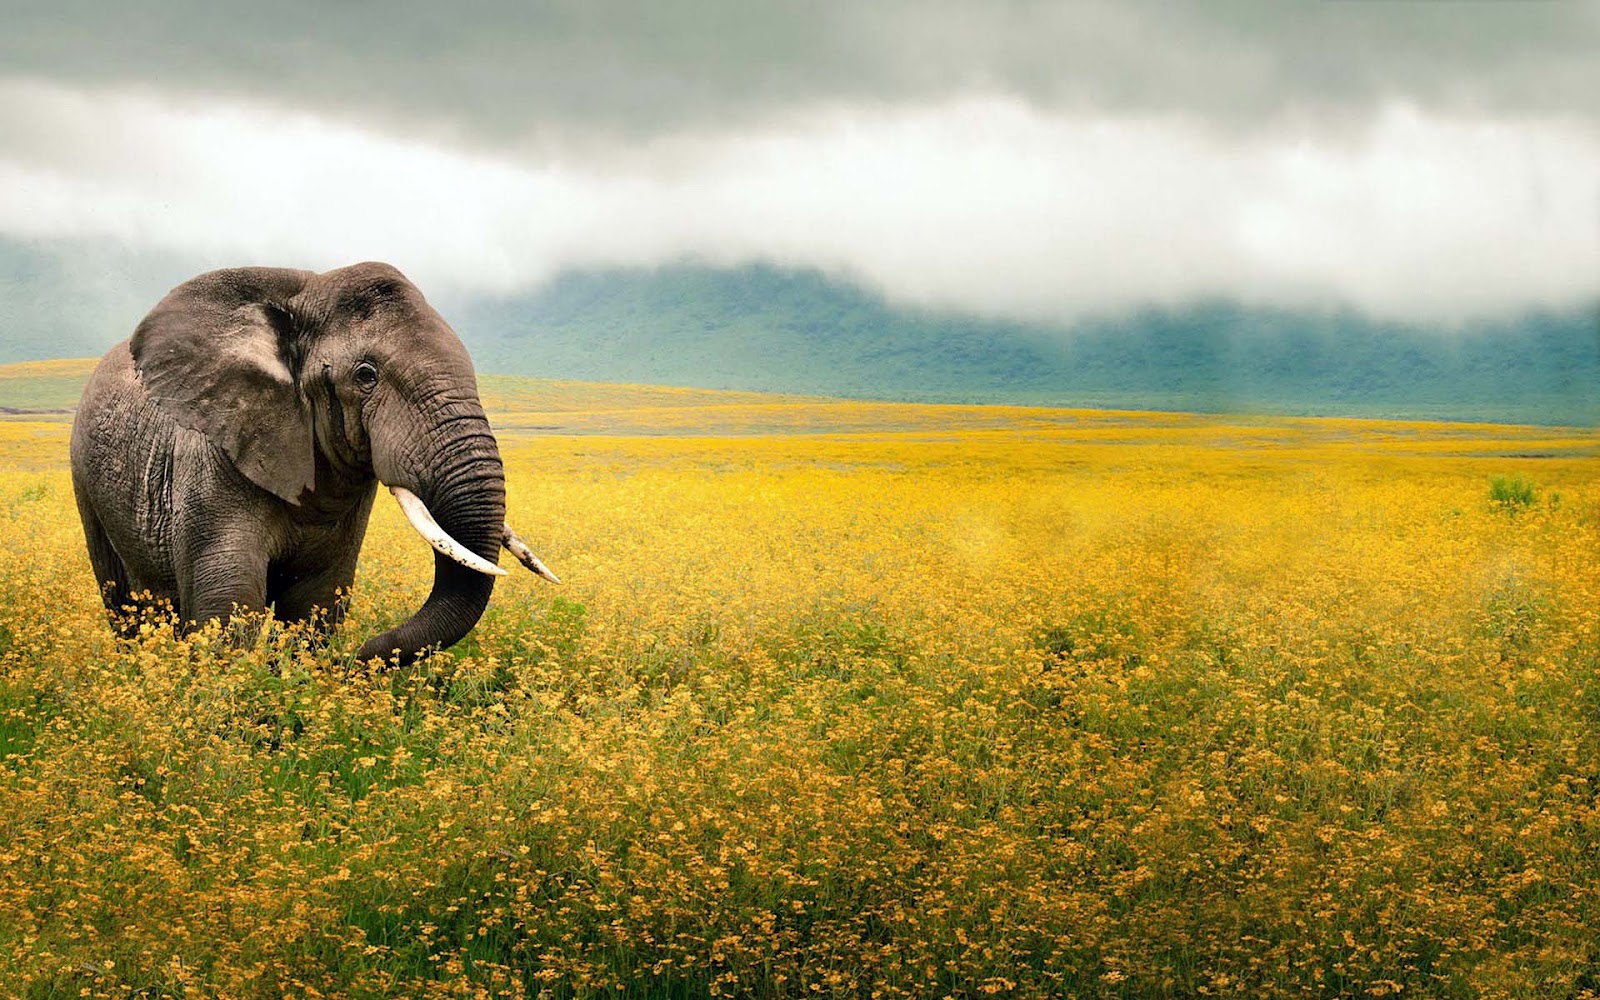 Elephant In Field Of Yellow Flowers